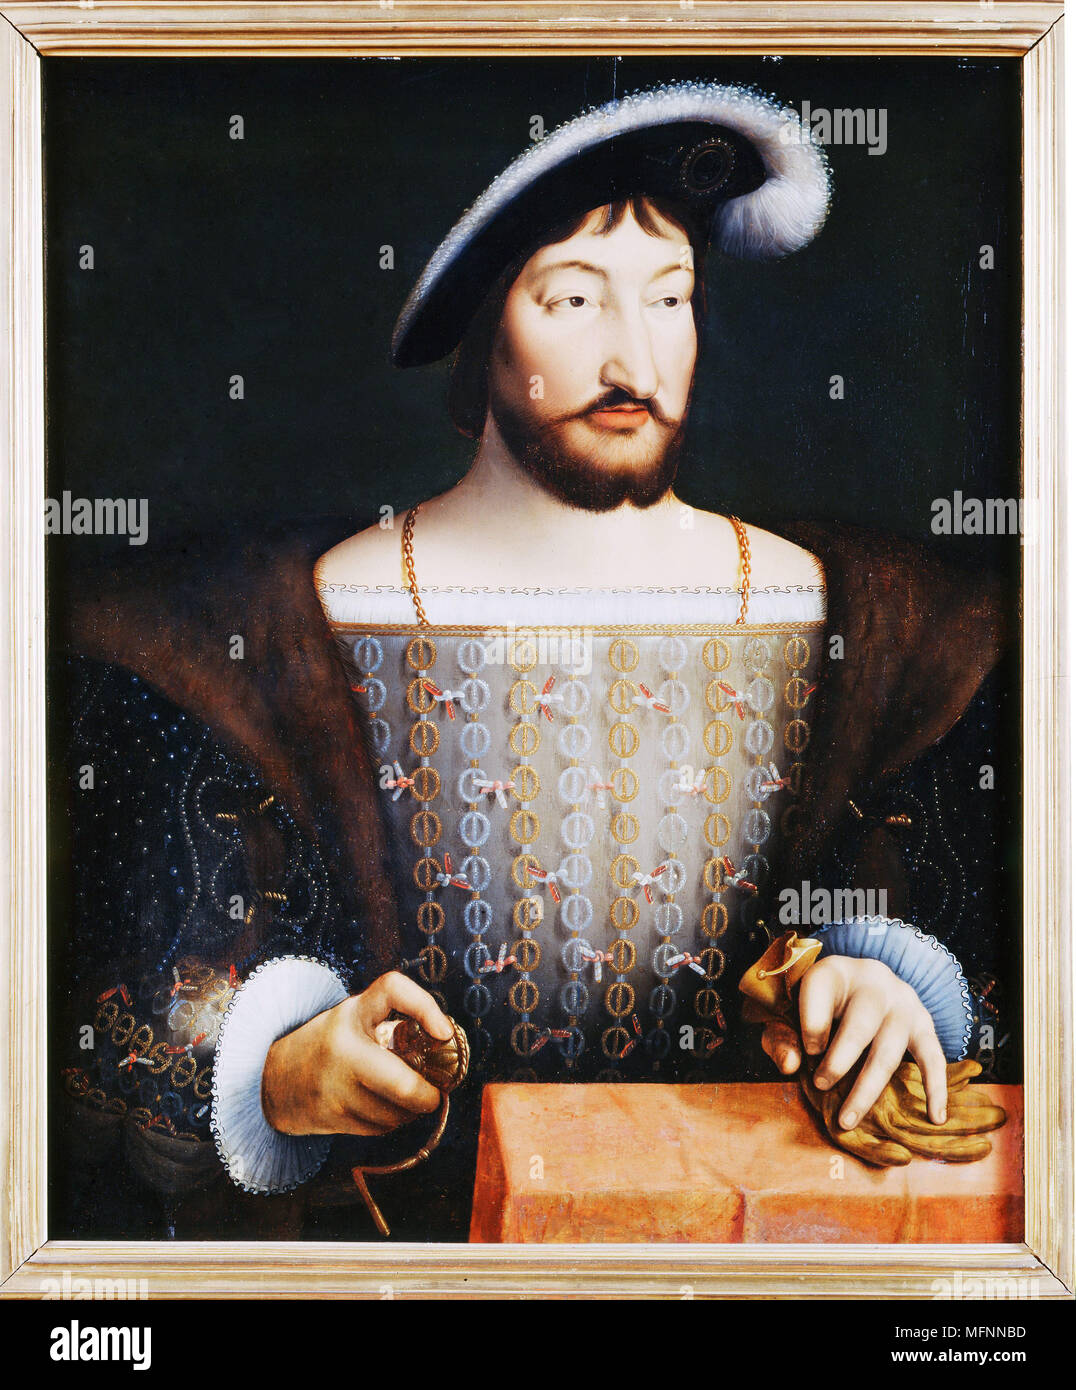 Francis ich (1494-1547) König von Frankreich von 1515. Flämische Schule, Anfang des 16. Jahrhunderts. Gemälde Öl auf Holz. Carnavalet-Museum. Stockfoto